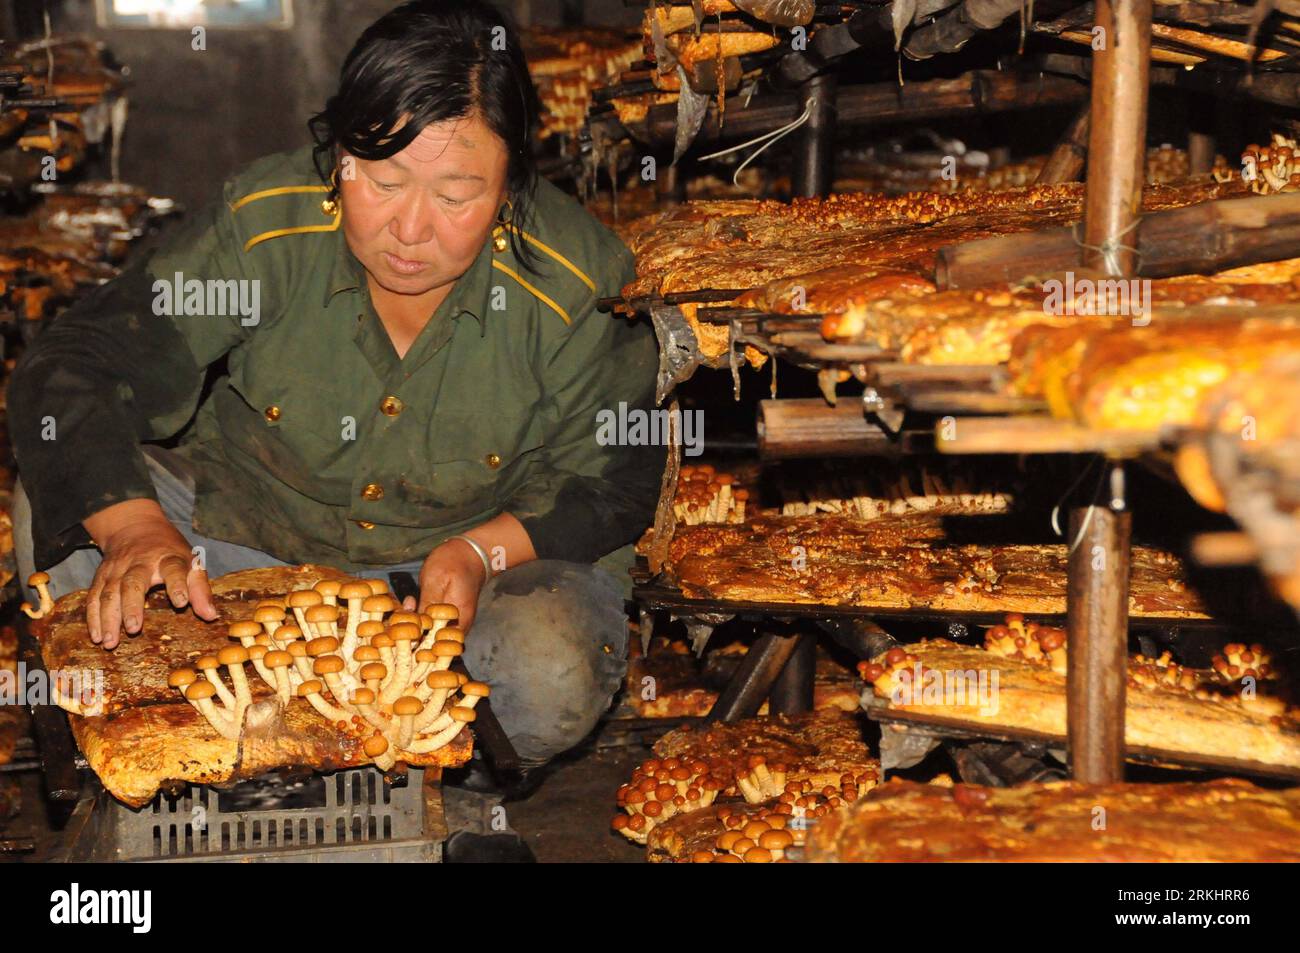 Bildnummer: 55895393 Datum: 04.09.2011 Copyright: imago/Xinhua (110905) -- HULUN BUIR, 5. September 2011 (Xinhua) -- Ein Jäger der ethnischen Gruppe Oroqen nimmt Pilze in einer Kultivierungsbasis für essbare Pilze in Hulun Buir, Nordchina, Autonome Region Innere Mongolei, 4. September 2011. Etwa 80 Prozent der Jäger können hier ein zusätzliches Einkommen von 1.000 Yuan (154,6 US-Dollar) aus dem Anbau von Pilzen erzielen. (Xinhua/Zhang Yue) (zmj) (lfj) CHINA-INNER MONGOLIA-HUNTER-PILZ (CN) PUBLICATIONxNOTxINxCHN Gesellschaft Wirtschaft Landwirtschaft Pilz Speisepilz Anbau Arbeitswelten xbs x0x 2011 quer Stockfoto